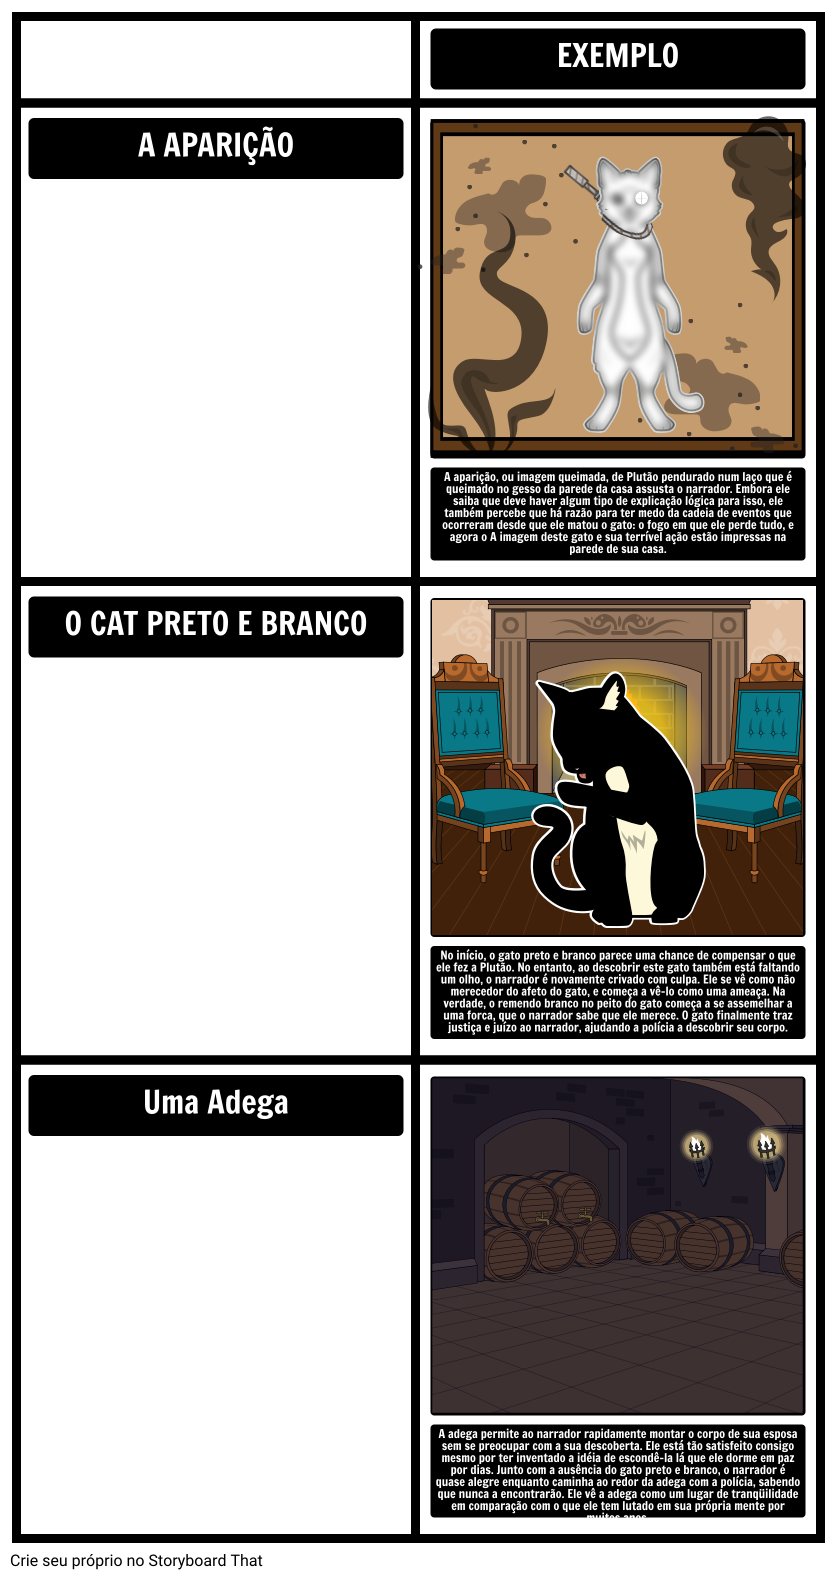 Temas, Símbolos e Motivos no Gato Preto